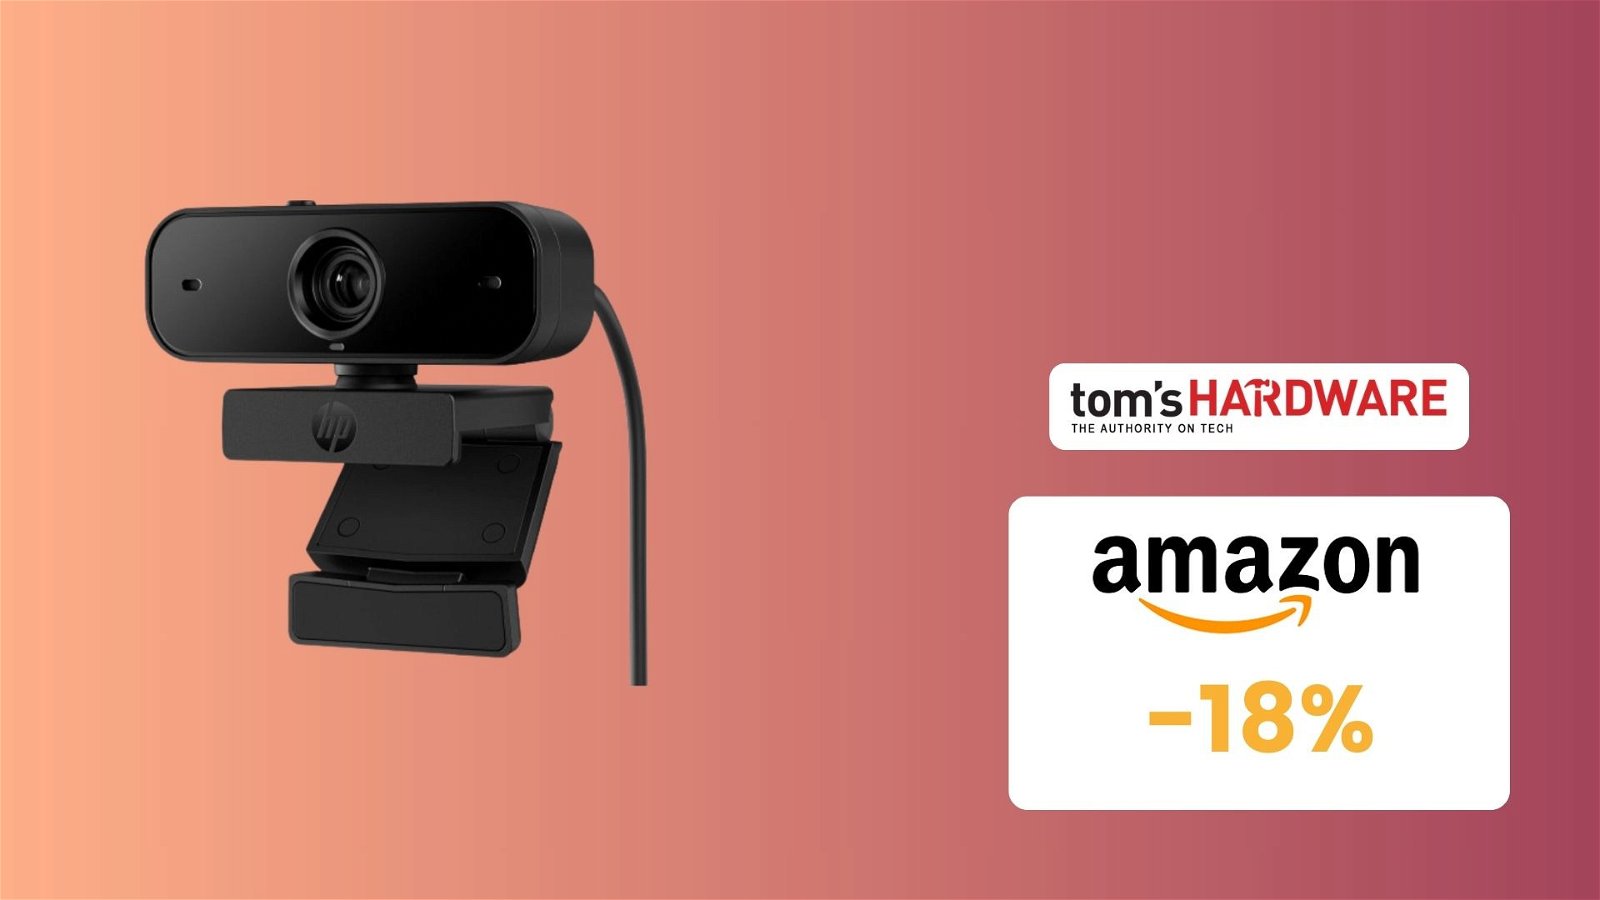 Immagine di Webcam HP 430 FHD, CHE PREZZO! Su Amazon risparmi il 18%